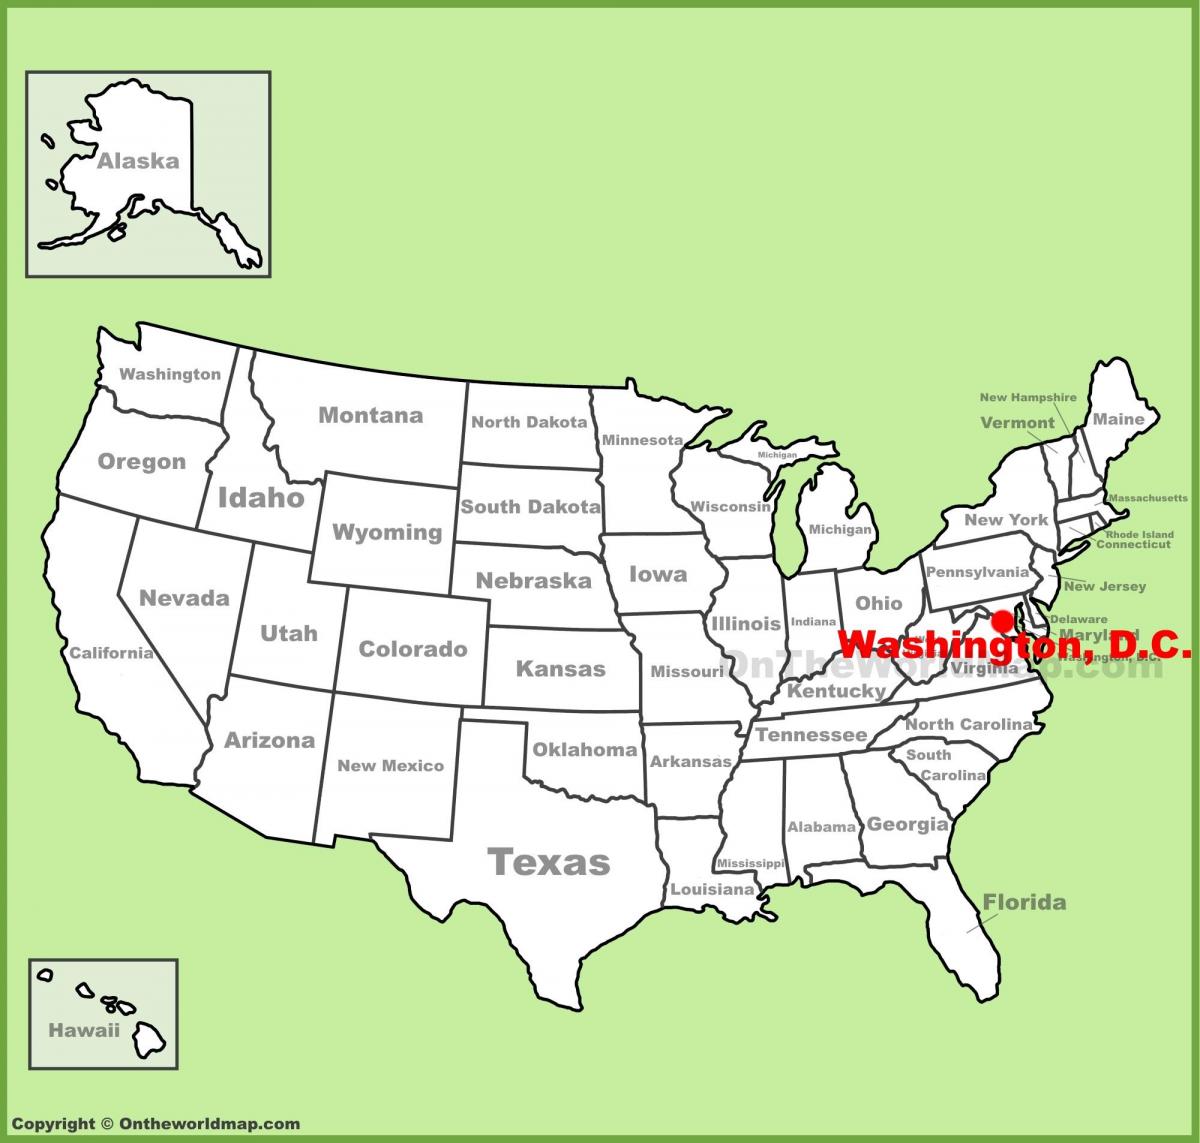 χάρτης μας με την ουάσινγκτον